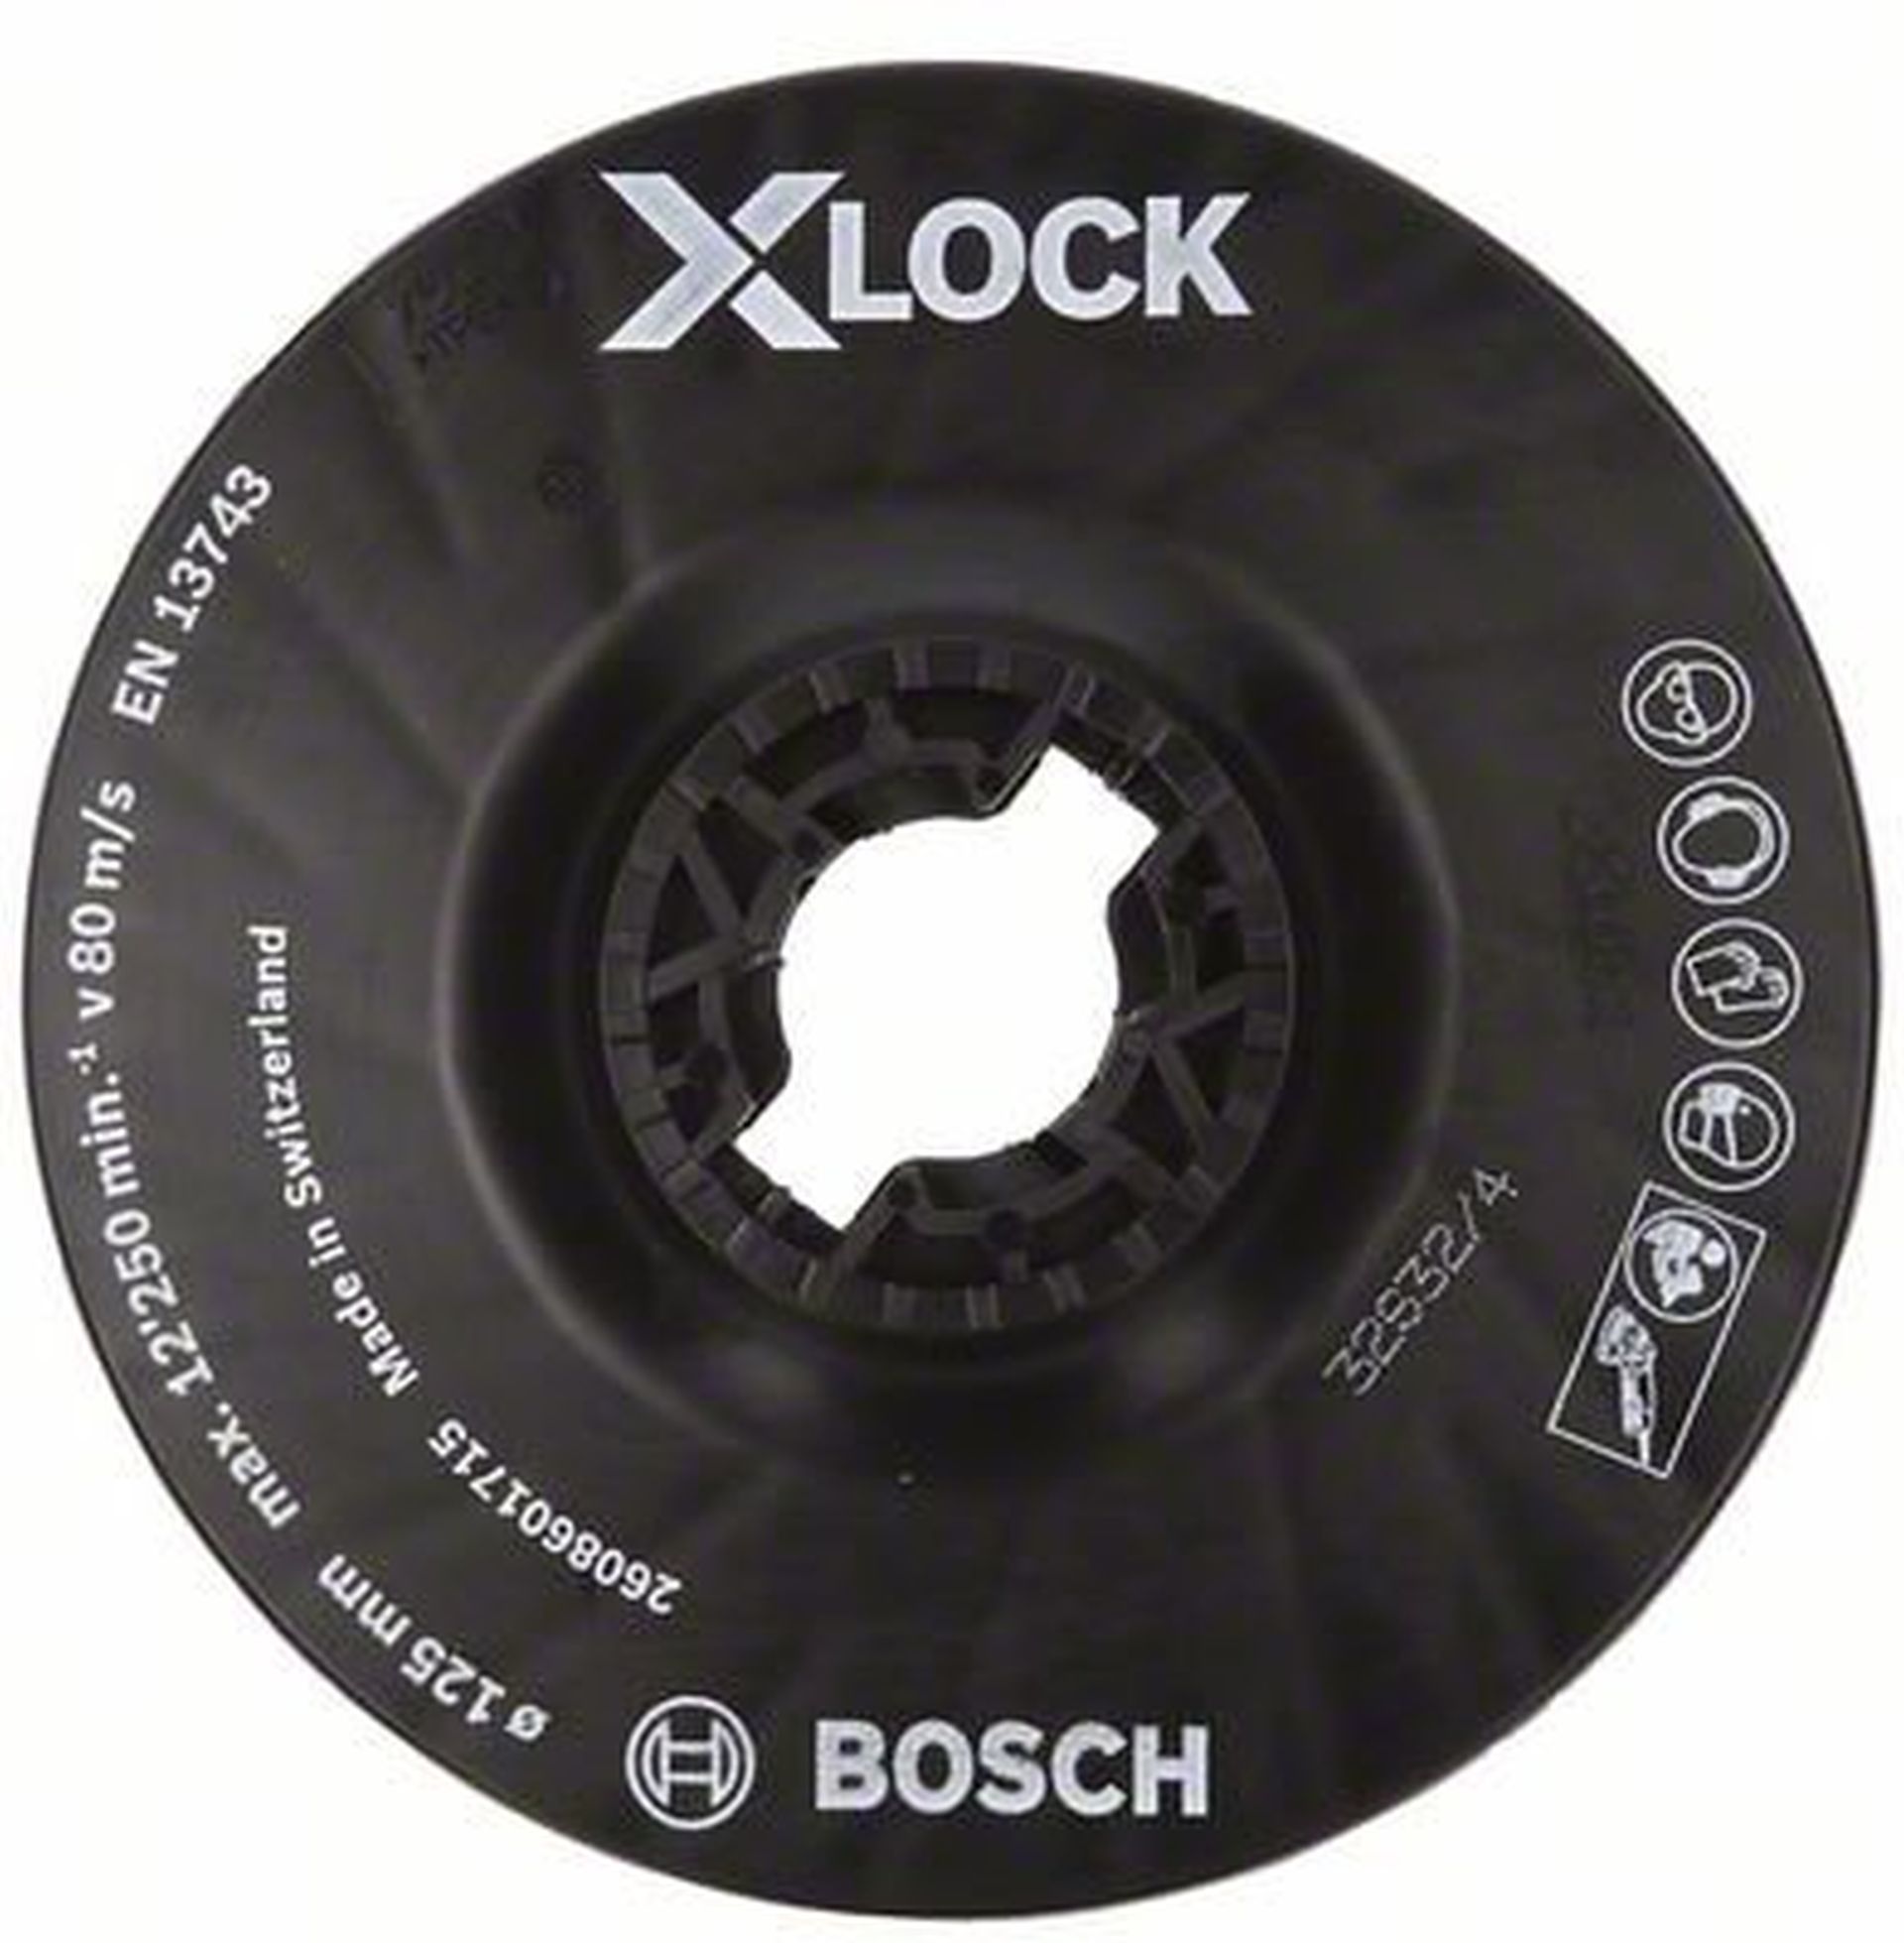 BOSCH Opěrný talíř systému X-LOCK, 125 mm, střední 2608601715